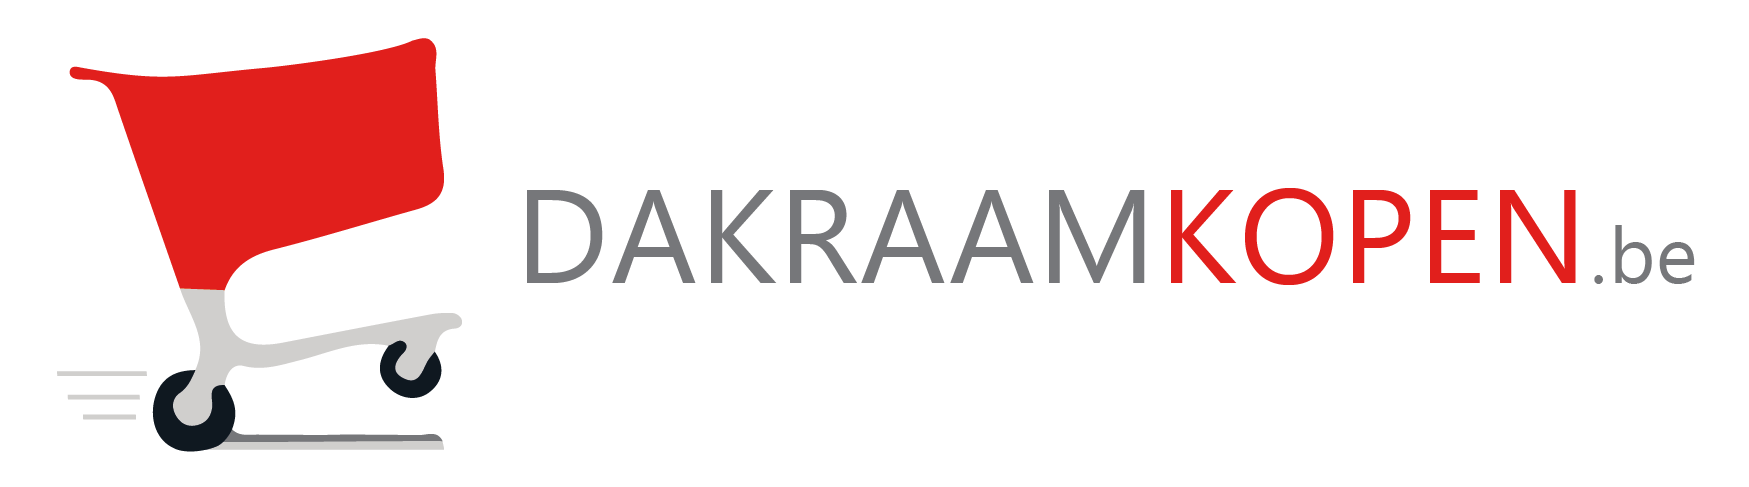 DakraamKopen.be promotie : Dag van de Webshop